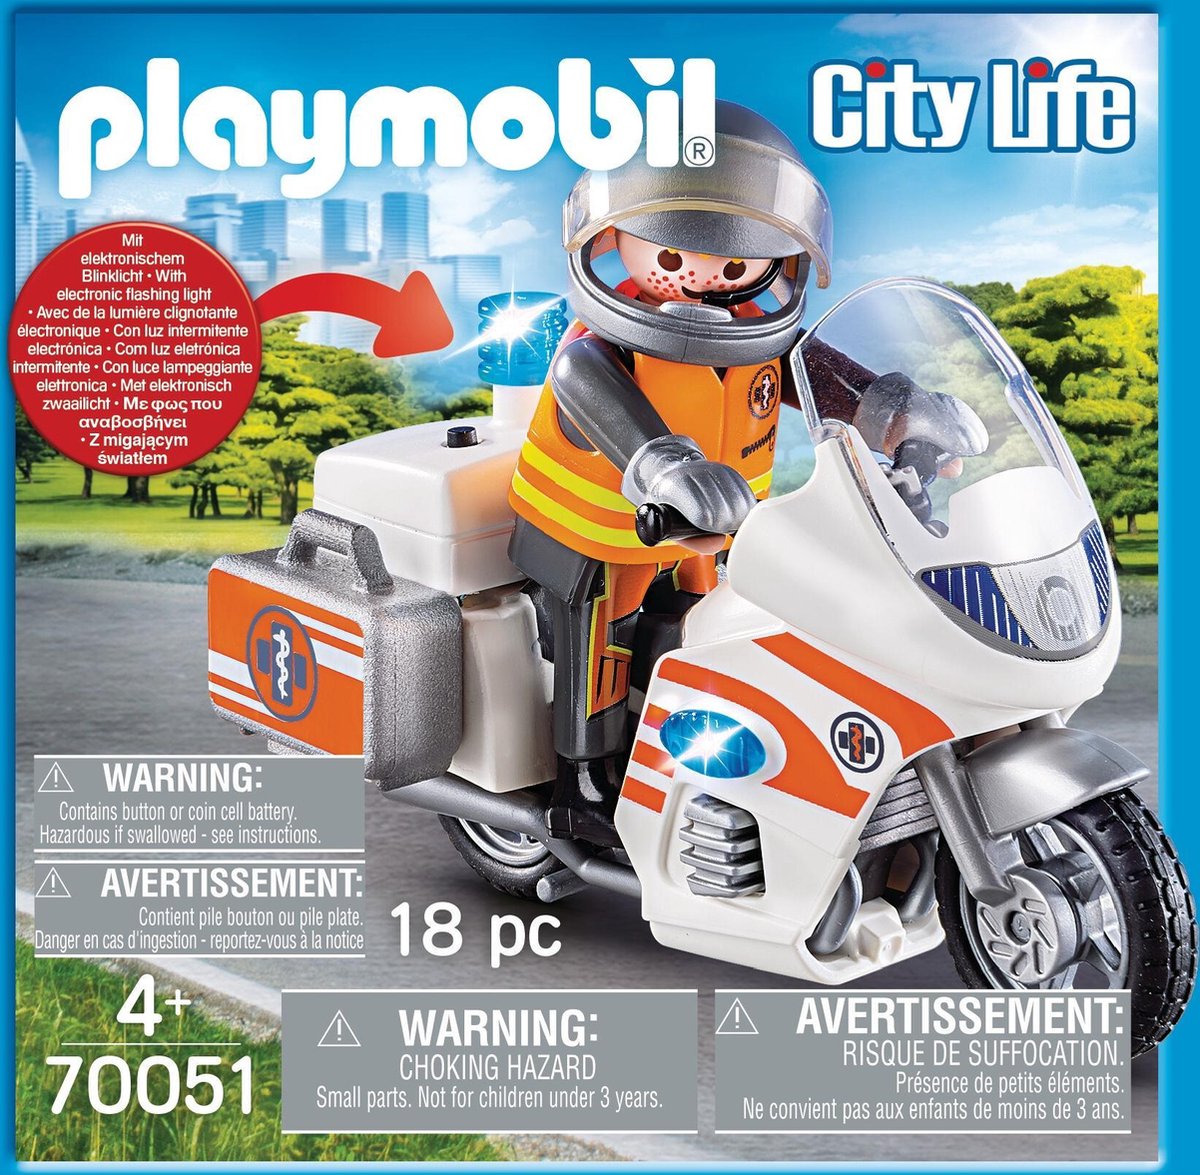 City life la voiture de médecin urgentiste Playmobil